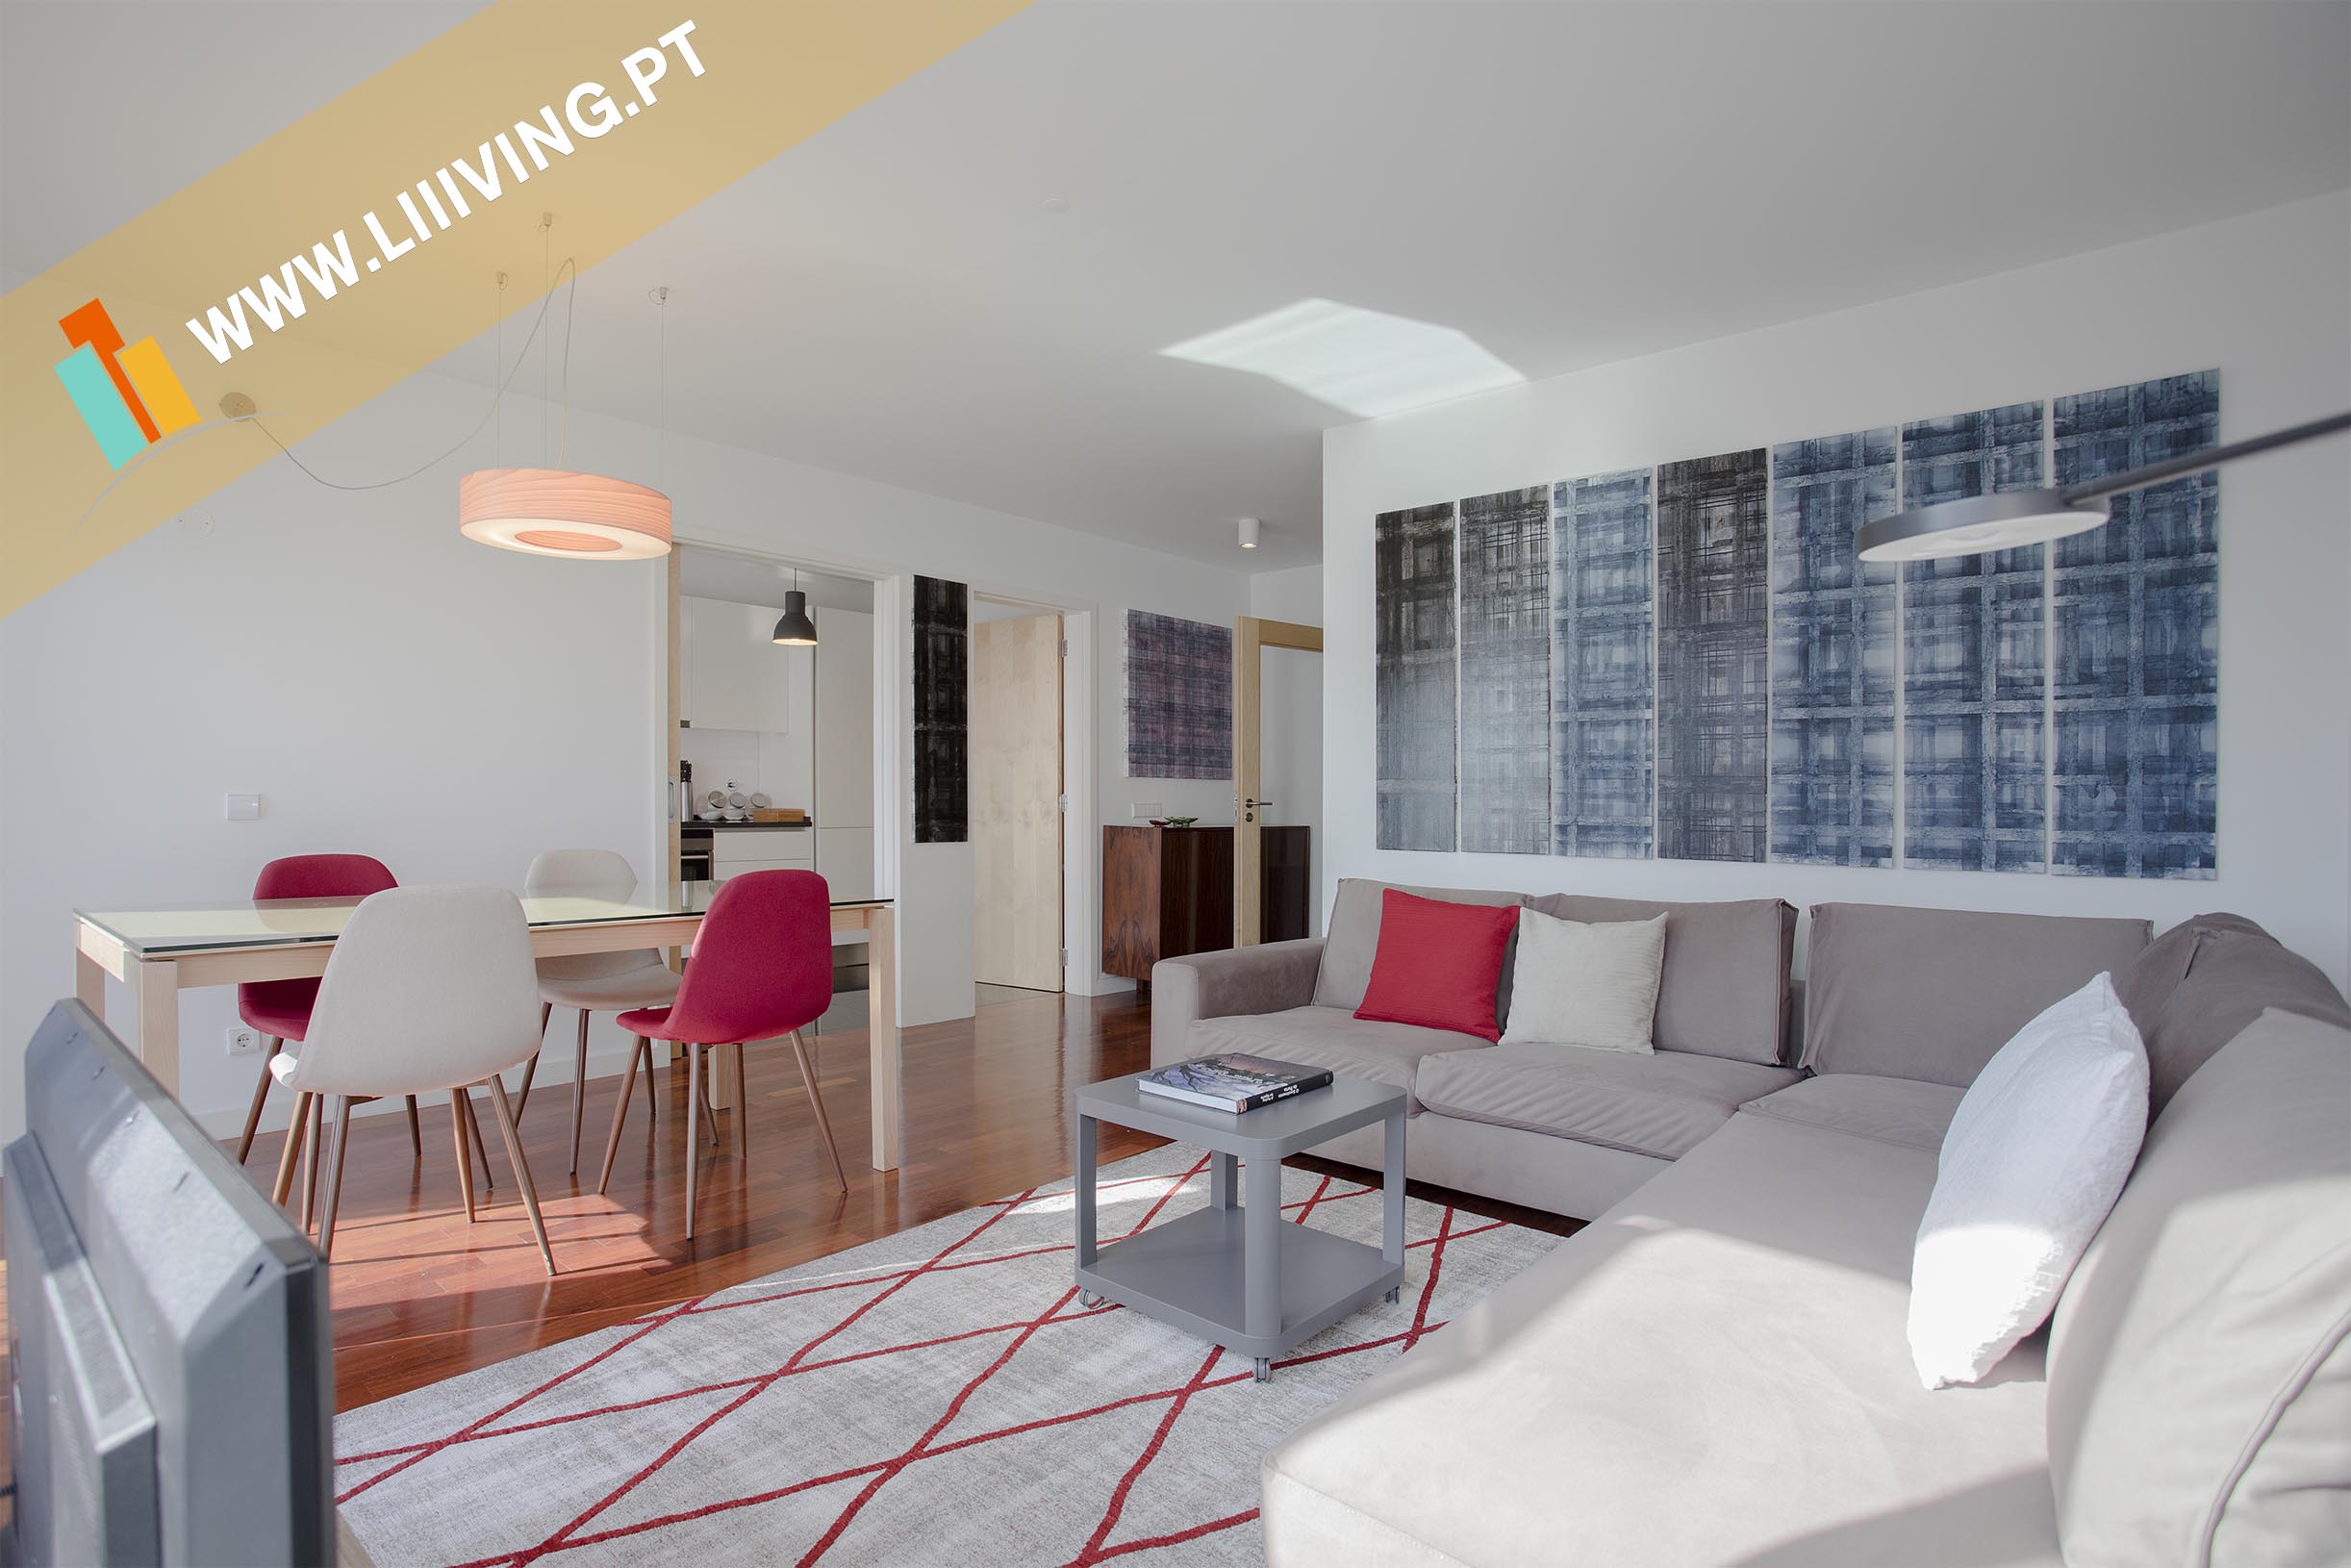 Liiiving | Short Stay : Bright Light Apartment